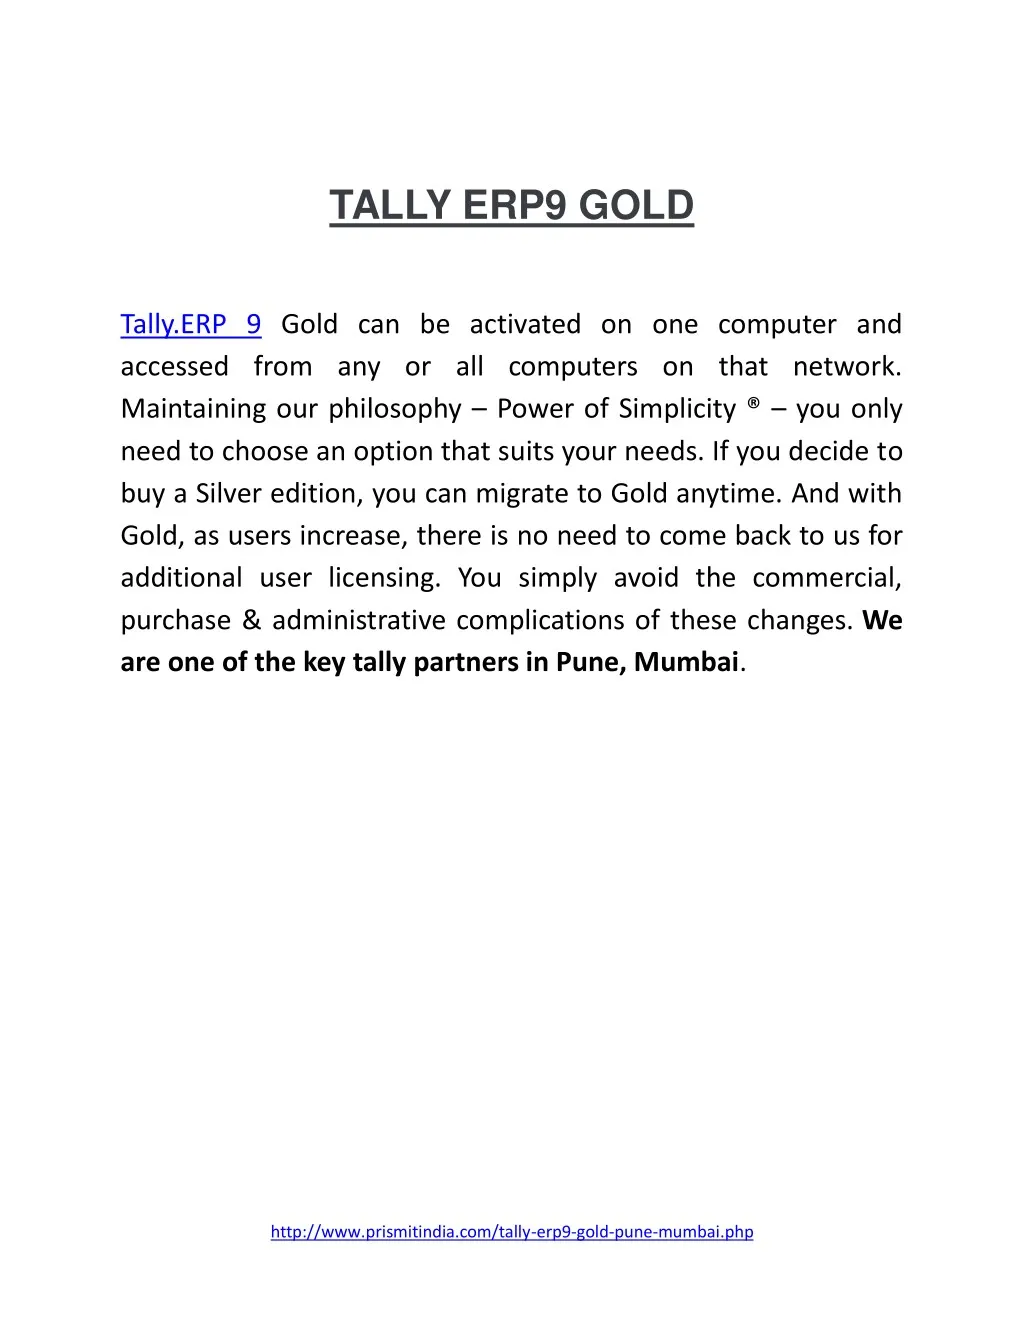 tally erp9 gold